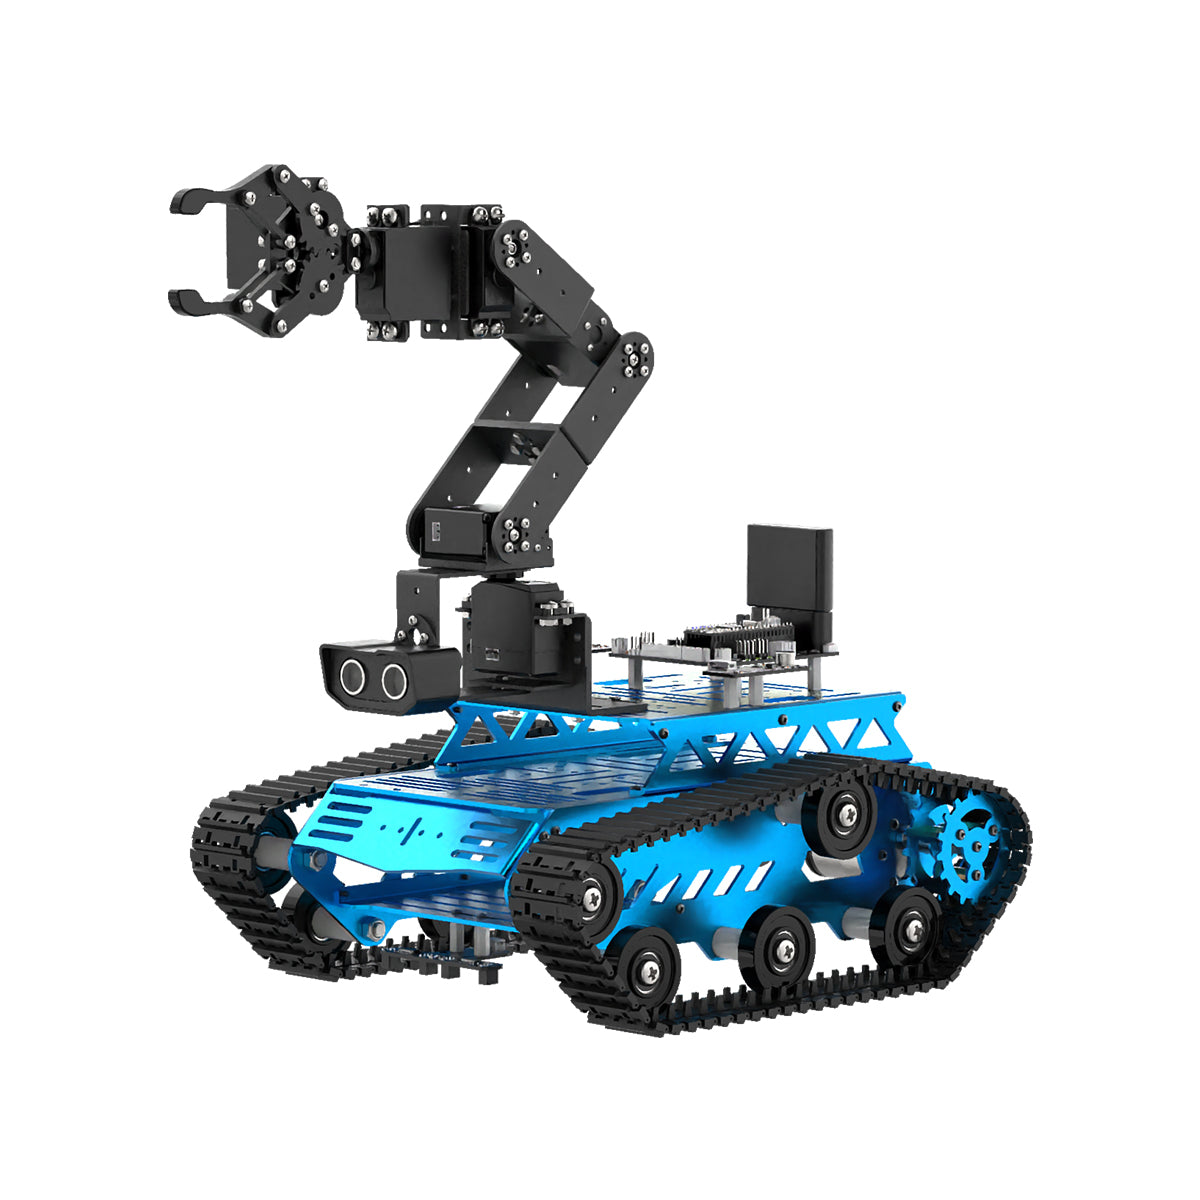 Hiwonder Tankbot Track Robot Car Loaded with Robotic Arm for STM32 Programming